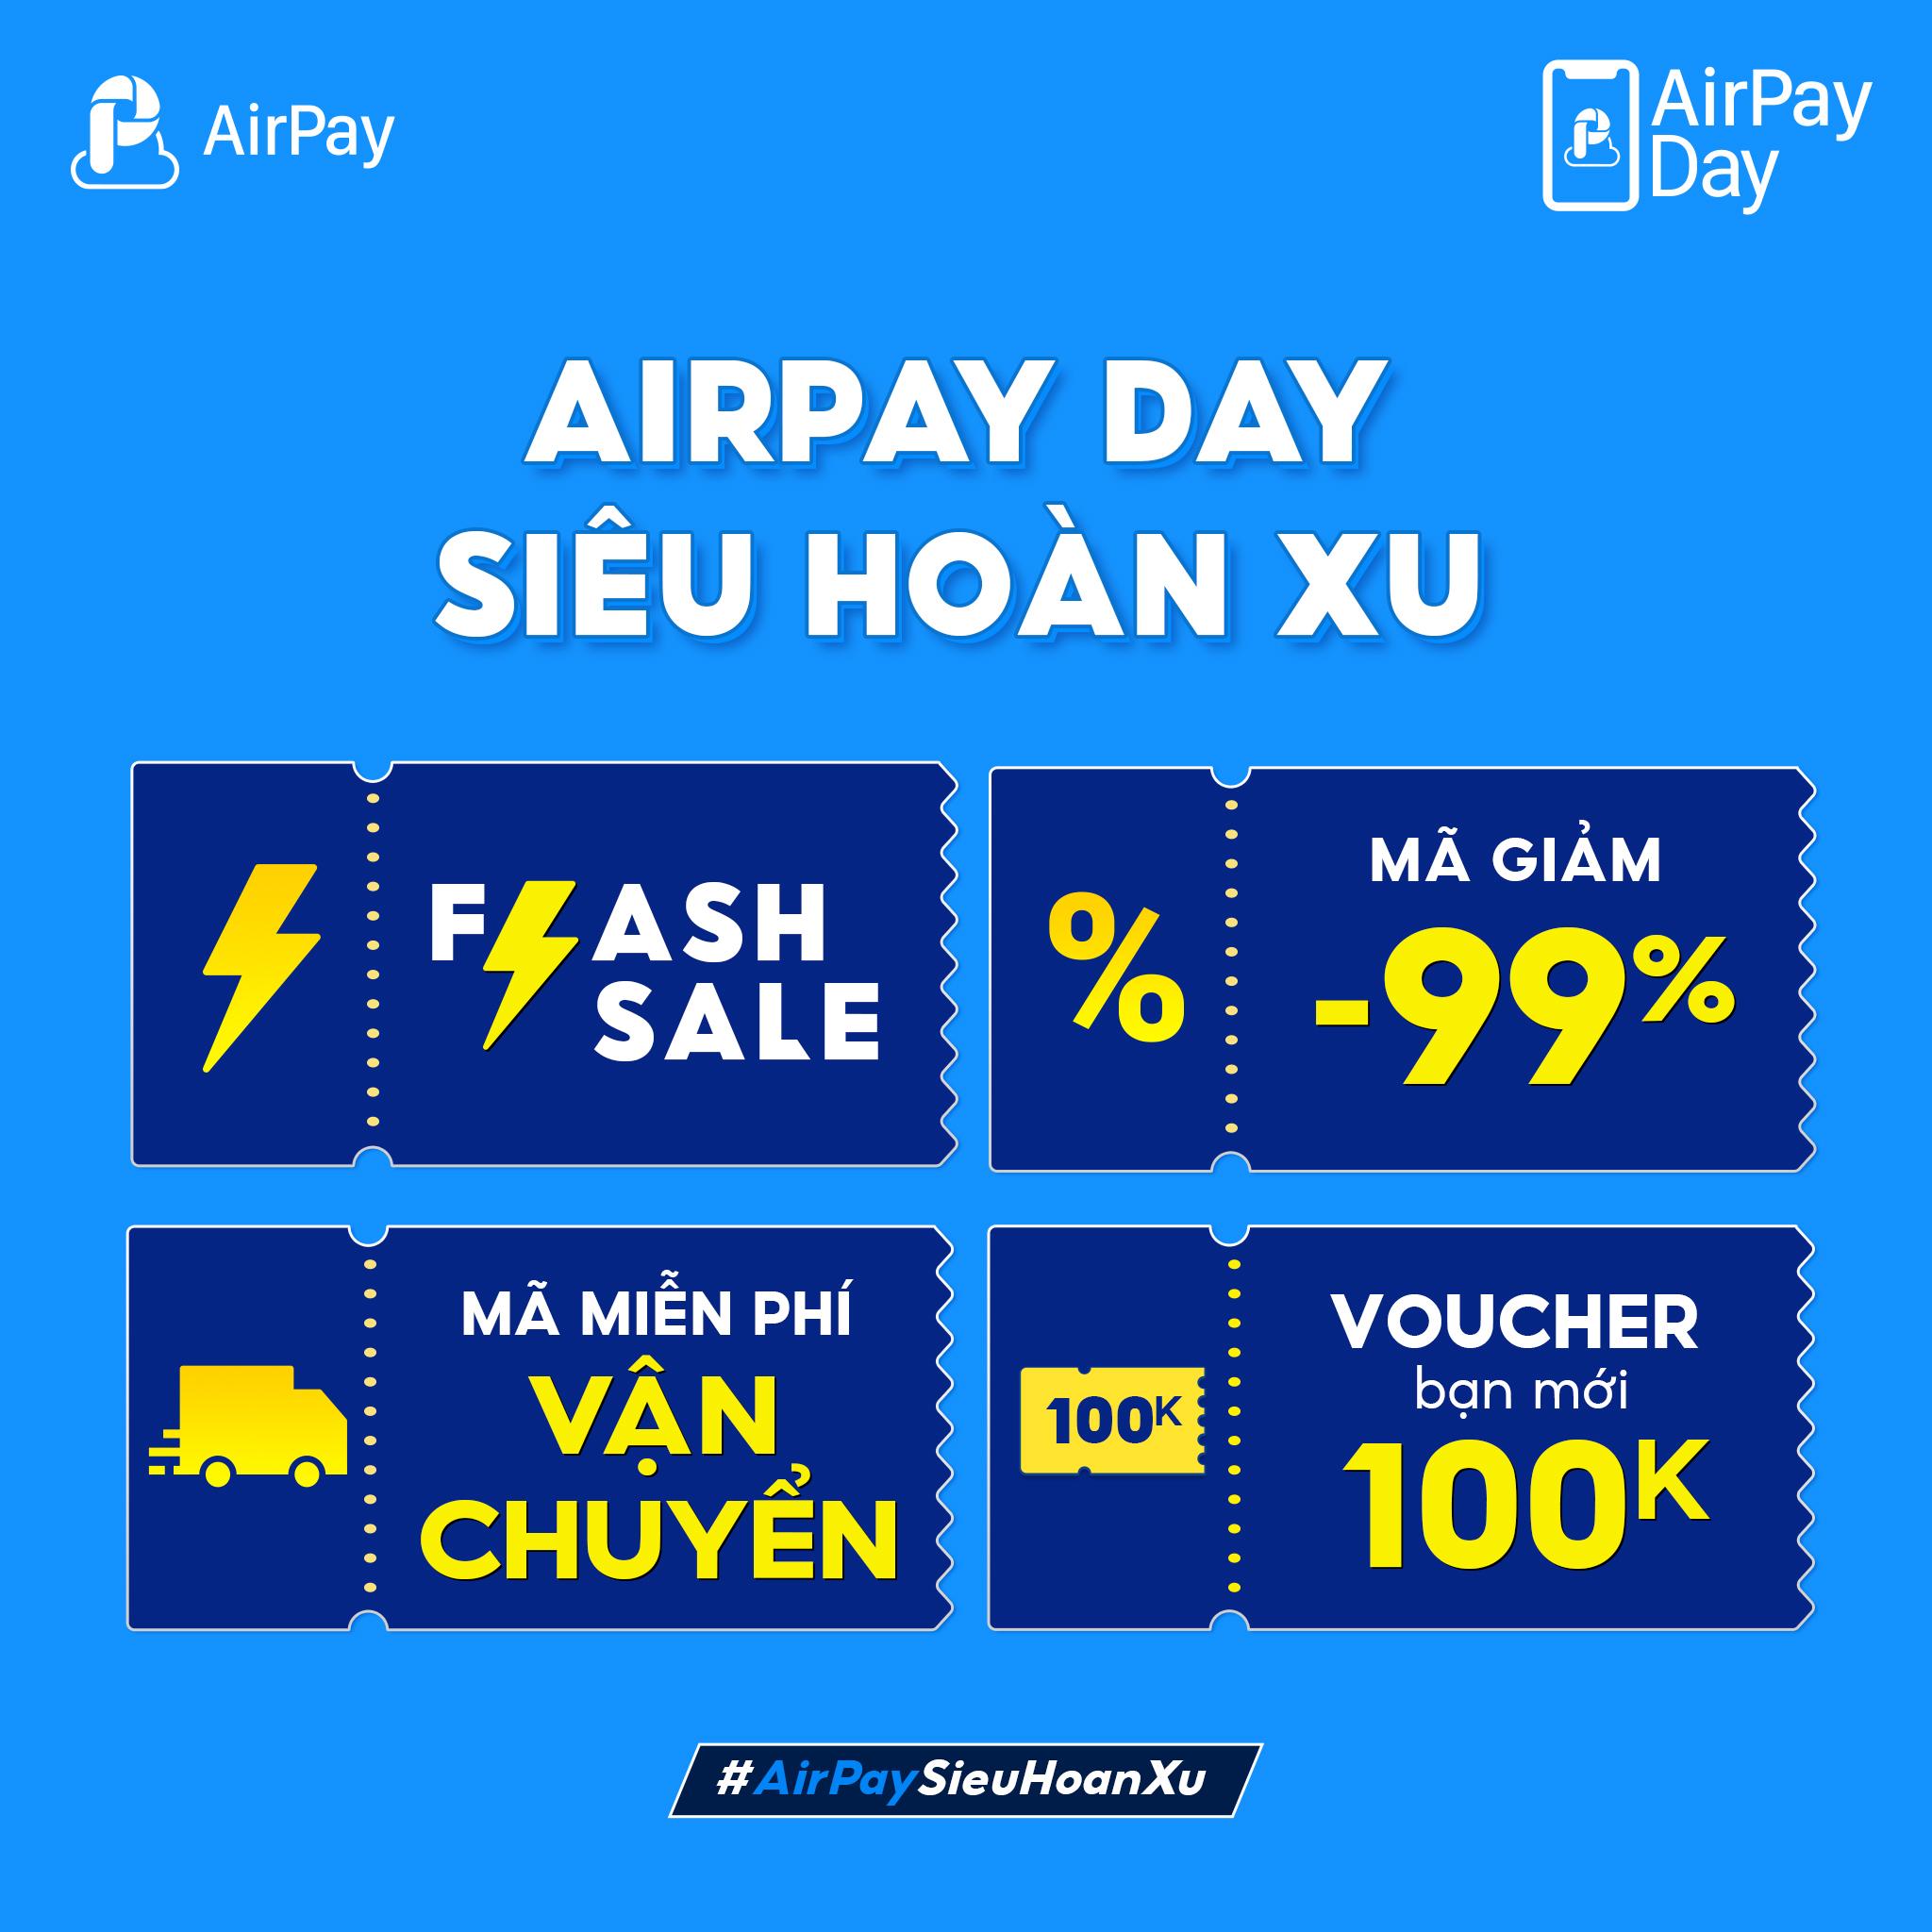 AirPay Day chiêu đãi “tín đồ” shopping voucher giảm giá đến 100K!